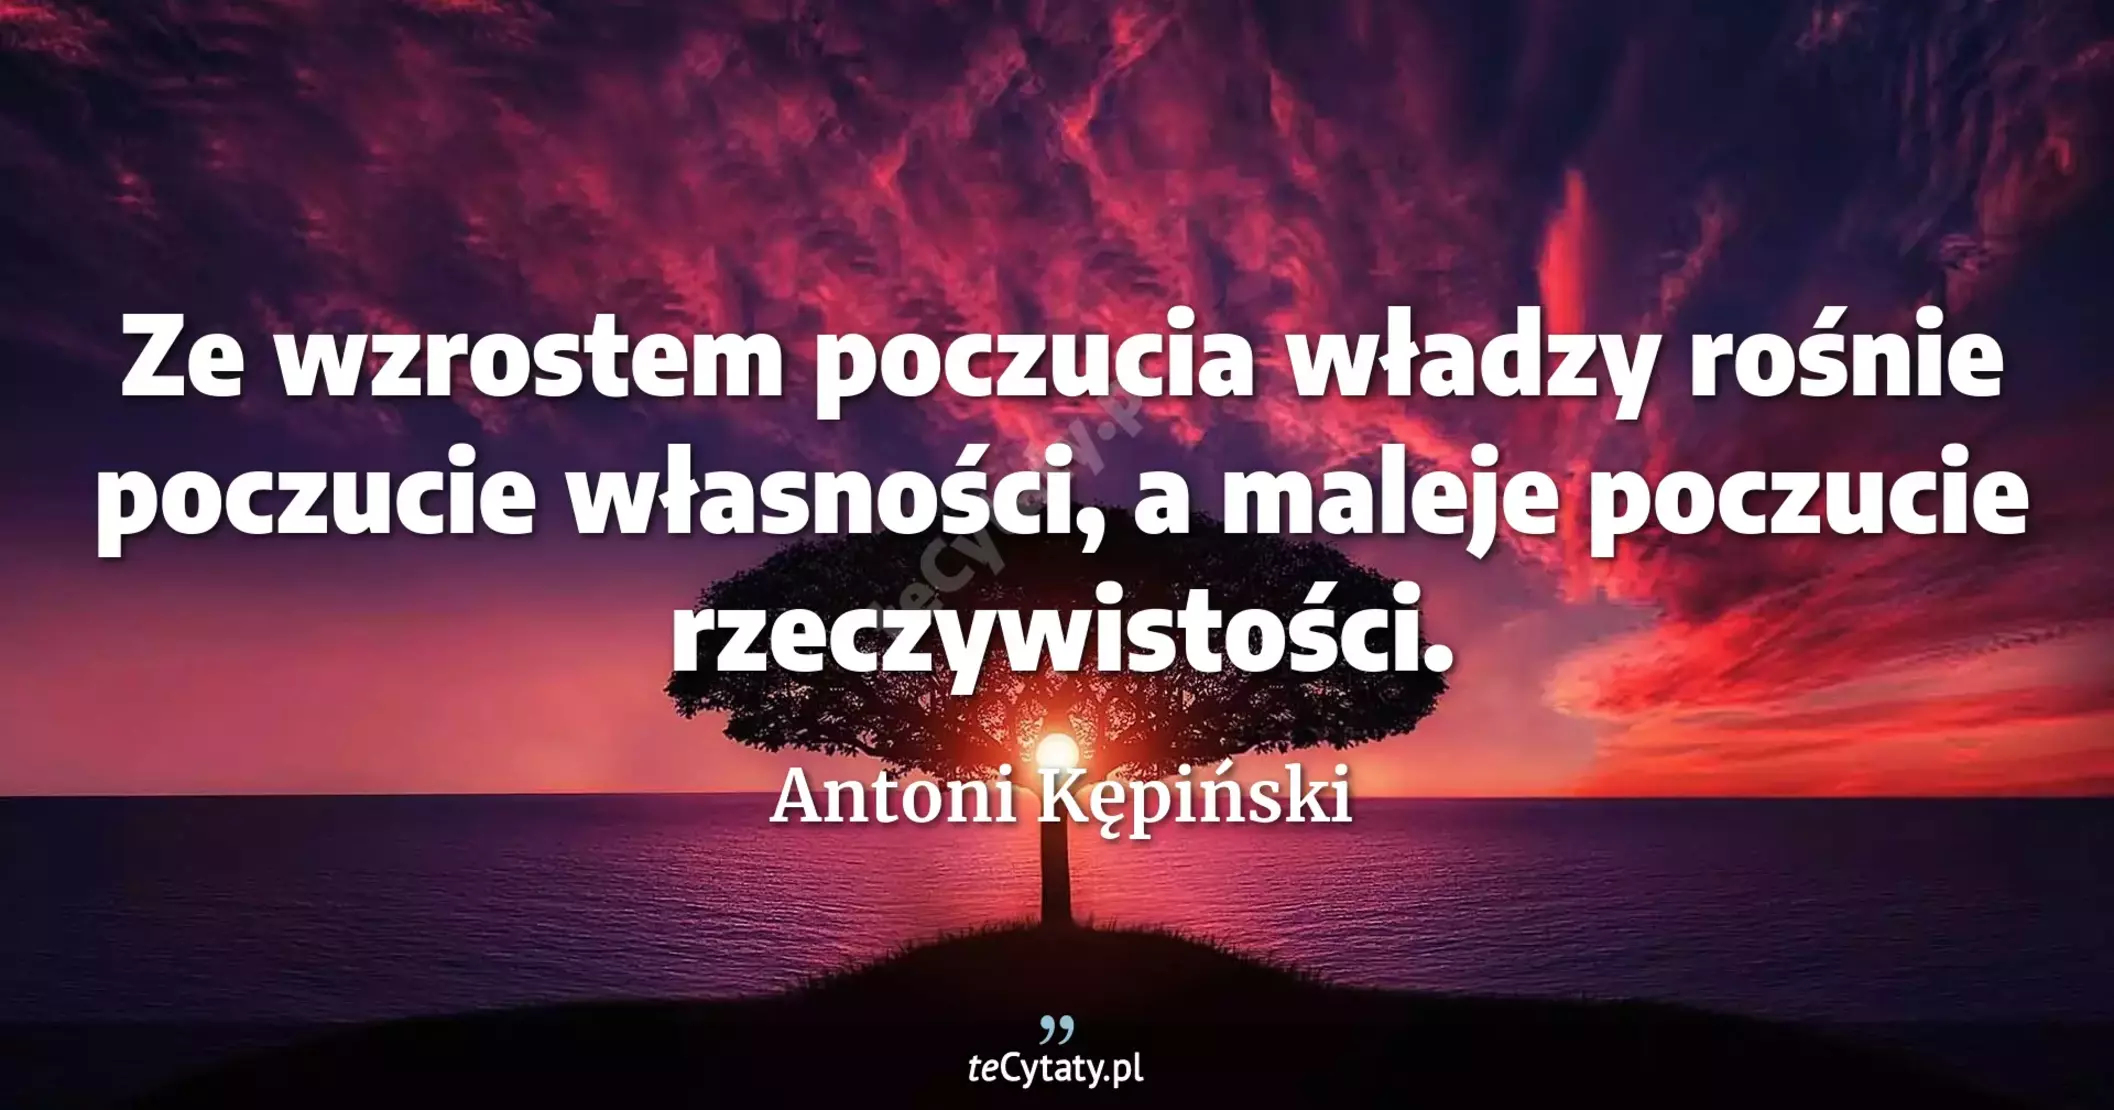 Ze wzrostem poczucia władzy rośnie poczucie własności, a maleje poczucie rzeczywistości. - Antoni Kępiński